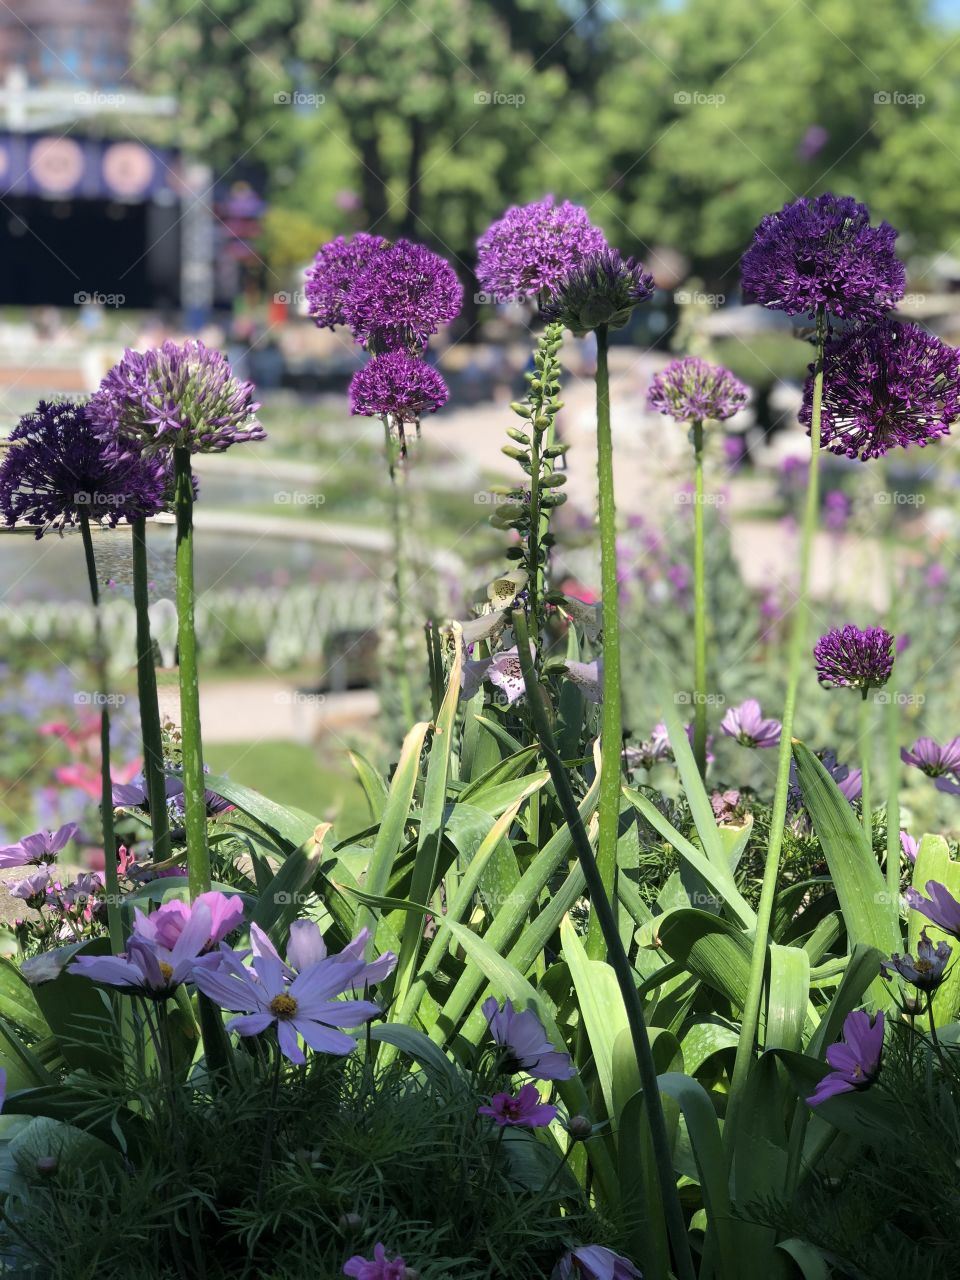 Beautiful purple flowers in a garden